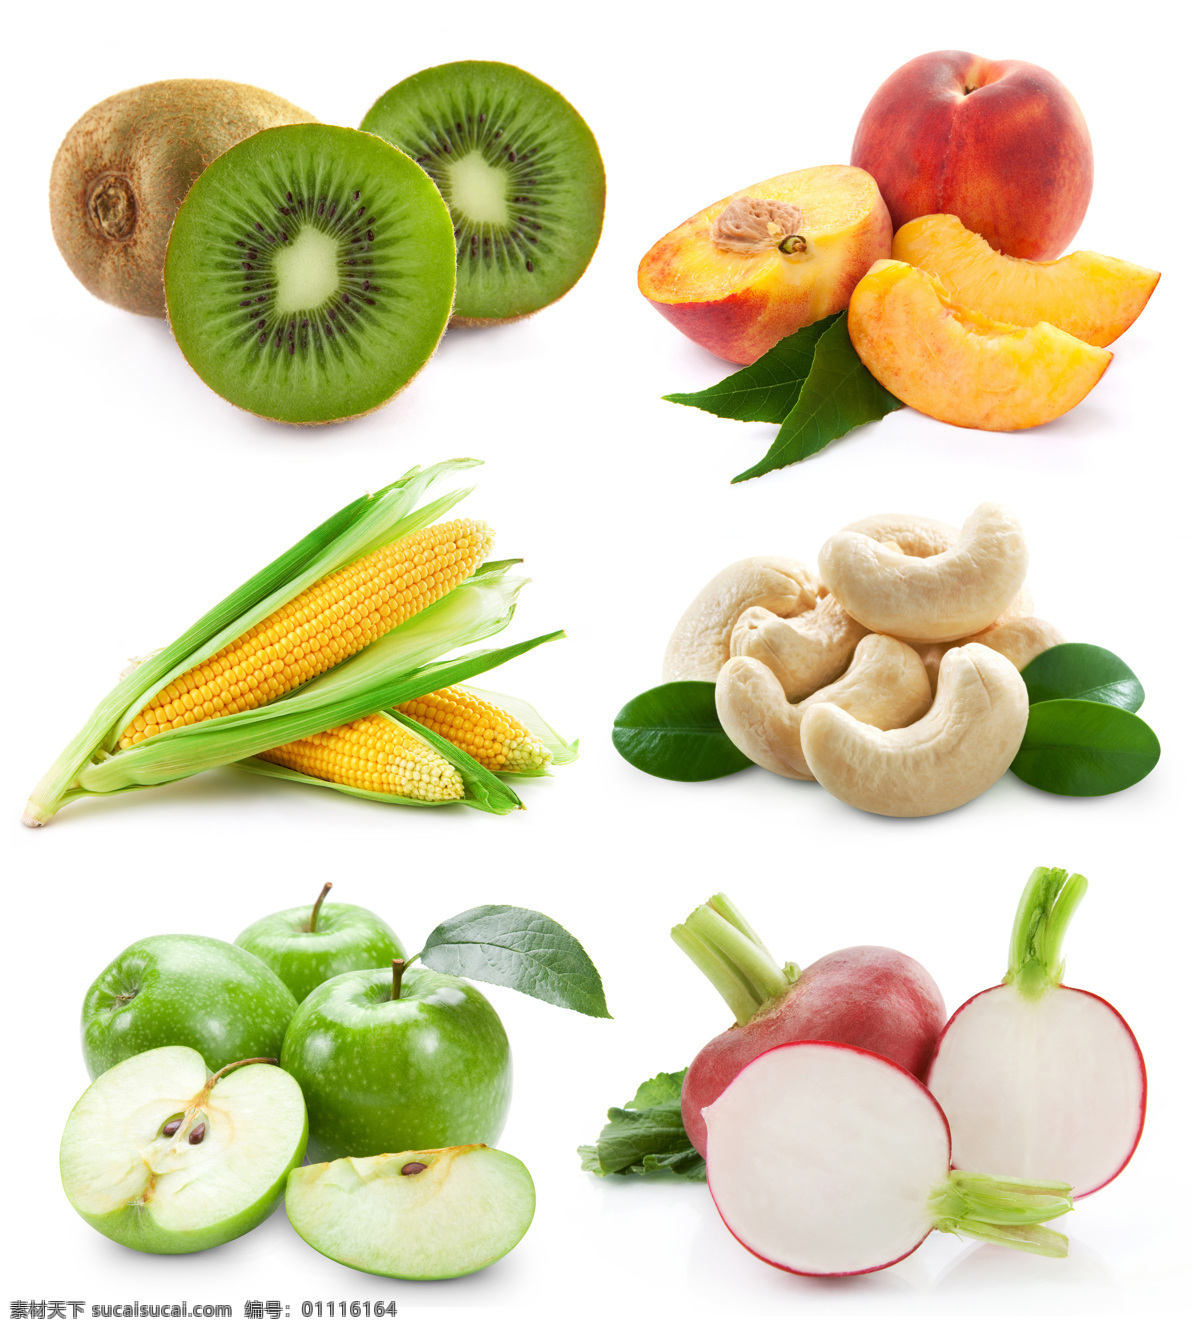 水果 蔬菜 背景 素材图片 猕猴桃 杏 玉米 青苹果 萝卜 水果摄影 水果广告 食物 水果图片 餐饮美食